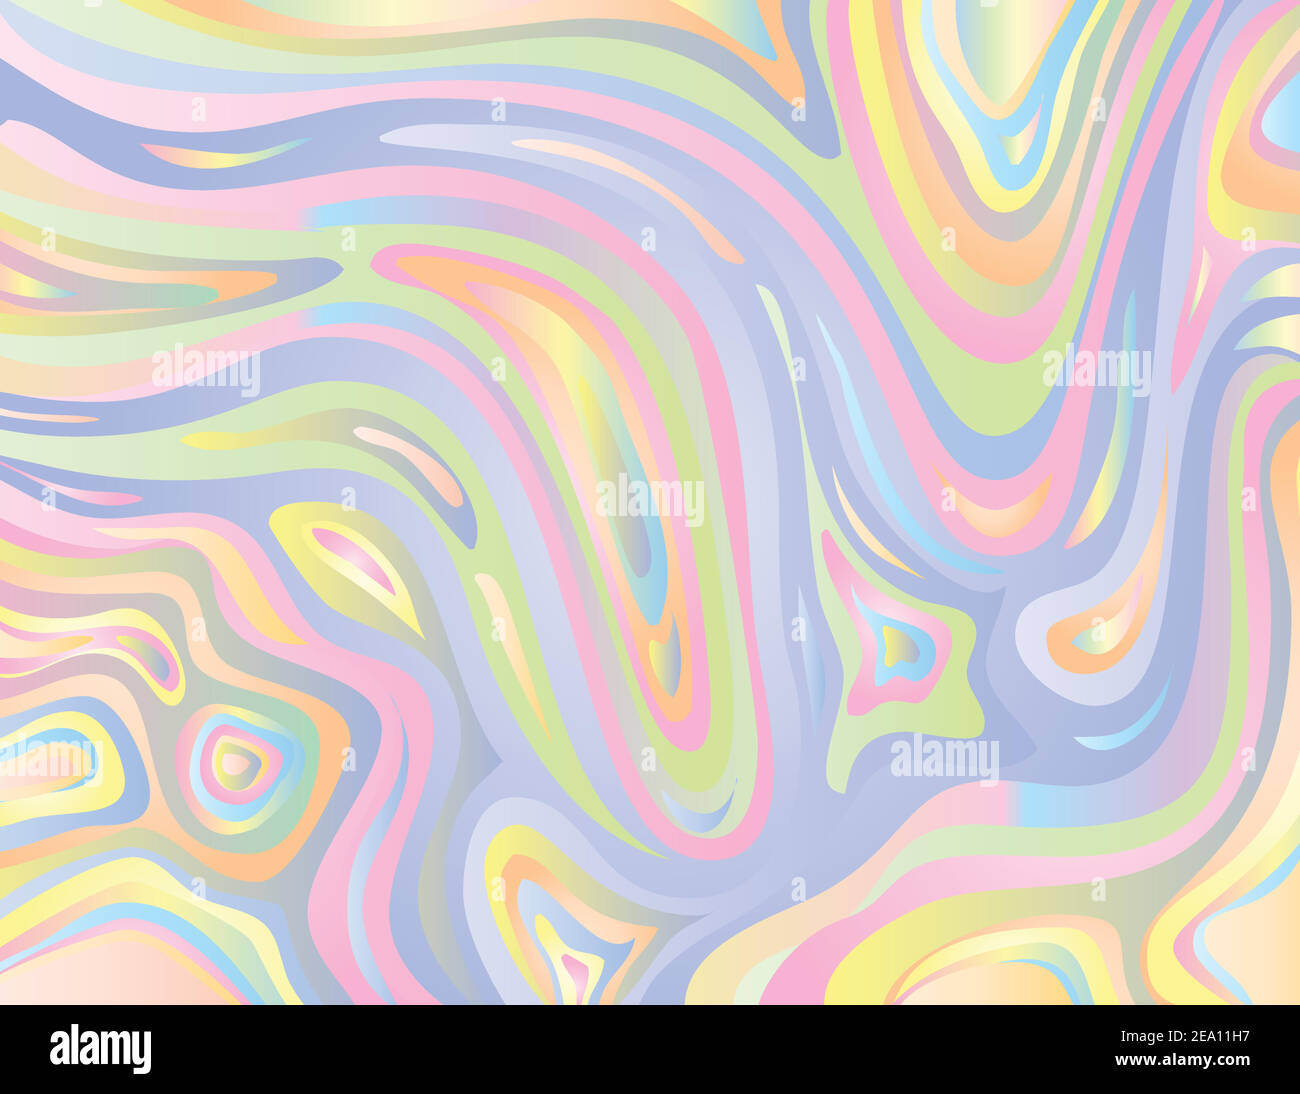 Digitale Marmorierung oder inkscape Illustration eines abstrakten wirbelnden psychedelischen, flüssigen Marmors und simulierter Marmorierung der Suminagashi Kintsugi marmorierte e Stock Vektor